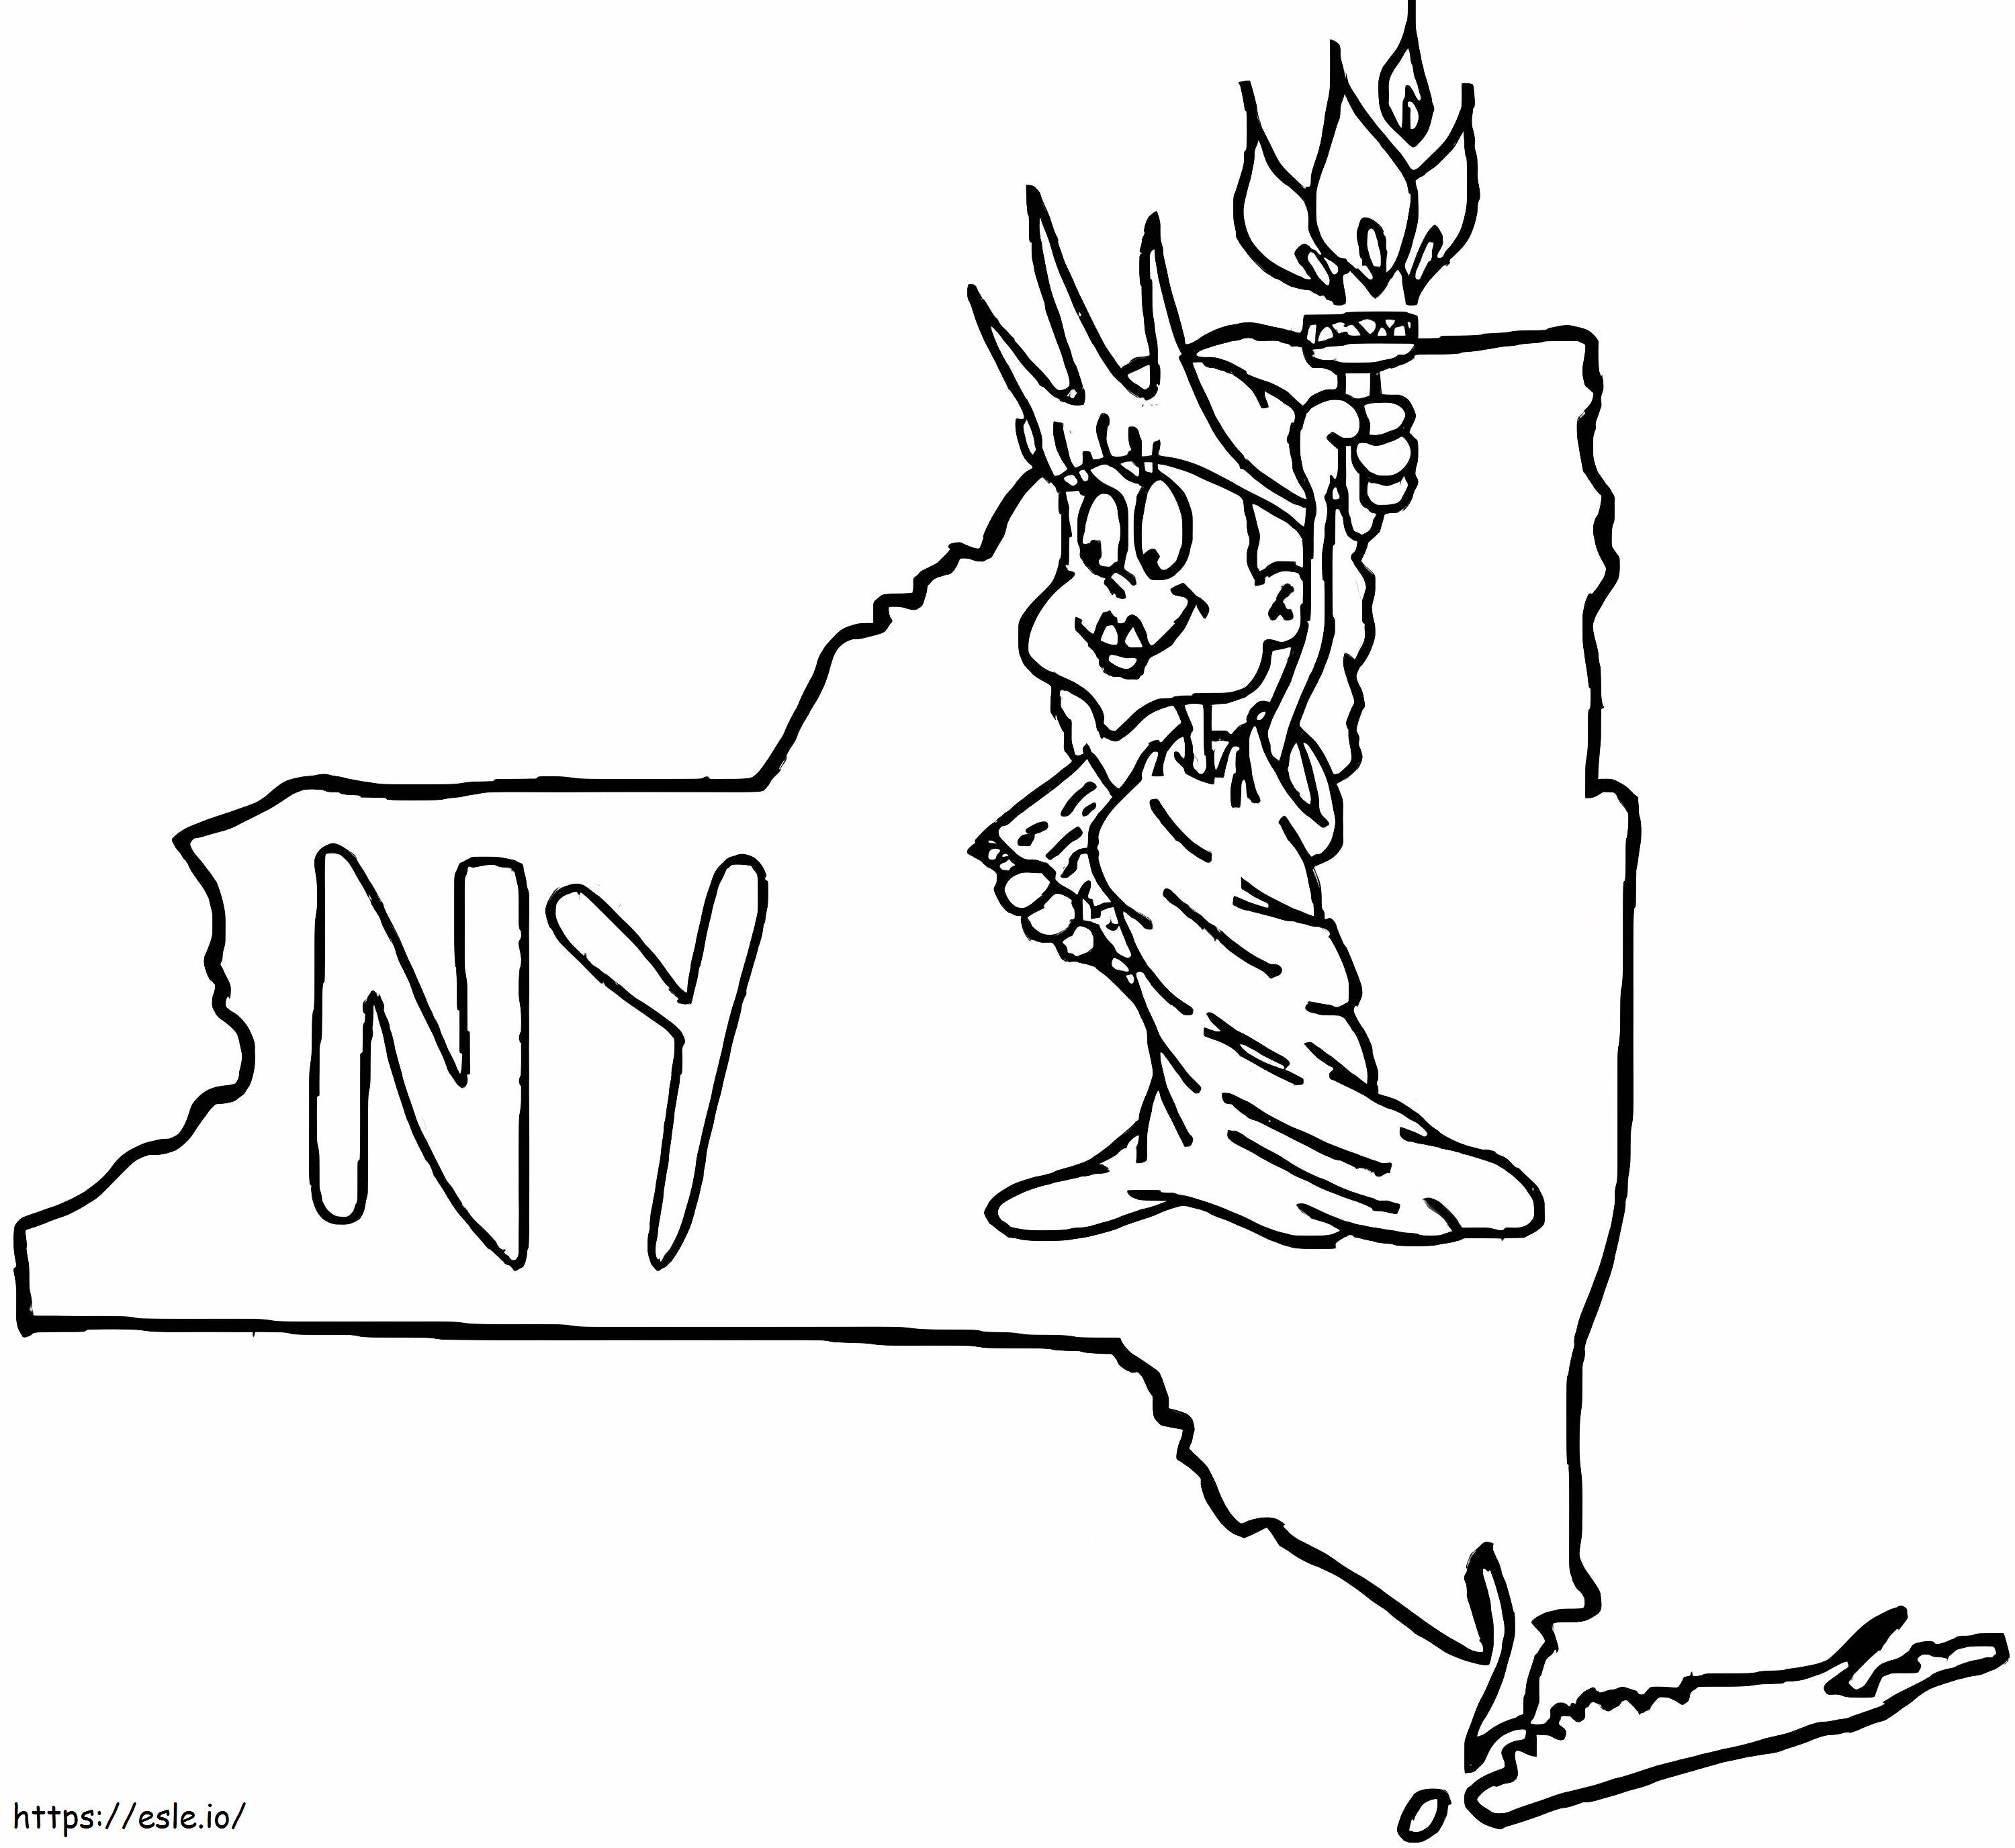 Estátua da Liberdade em Nova York para colorir